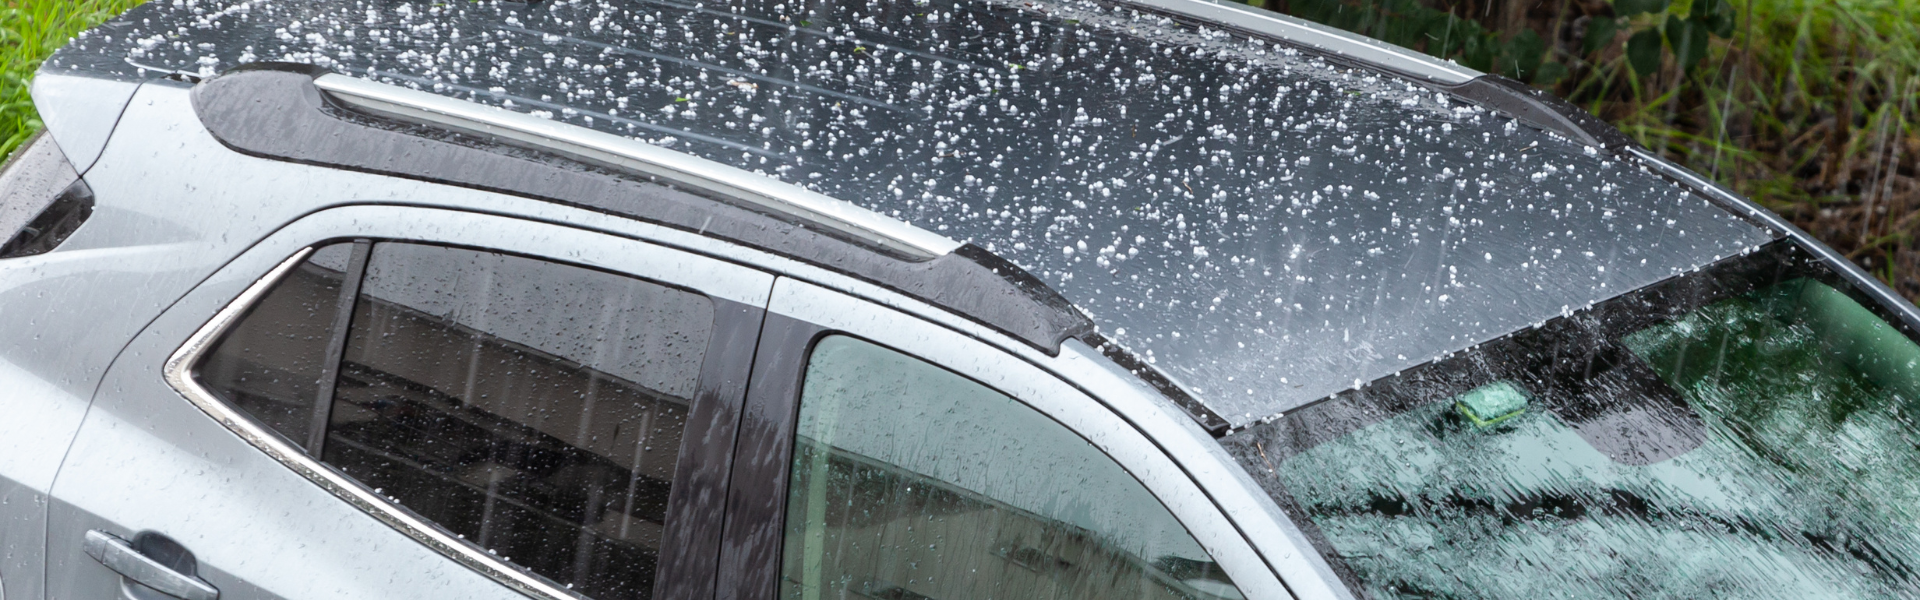 hail damaged car near Austin